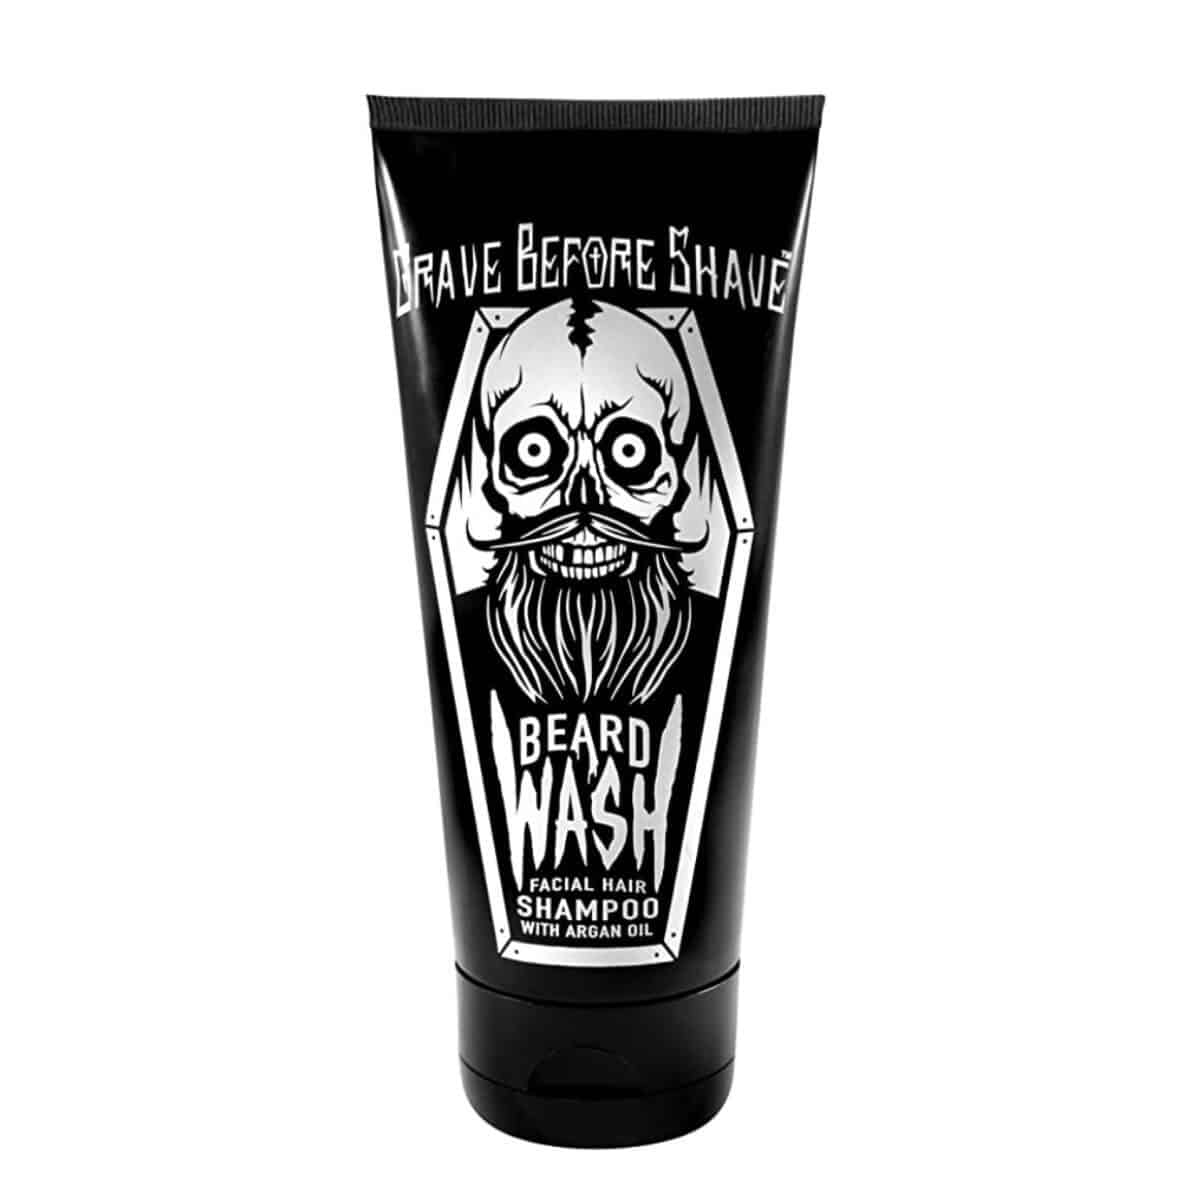 Black squeeze bottle of beard shampoo.